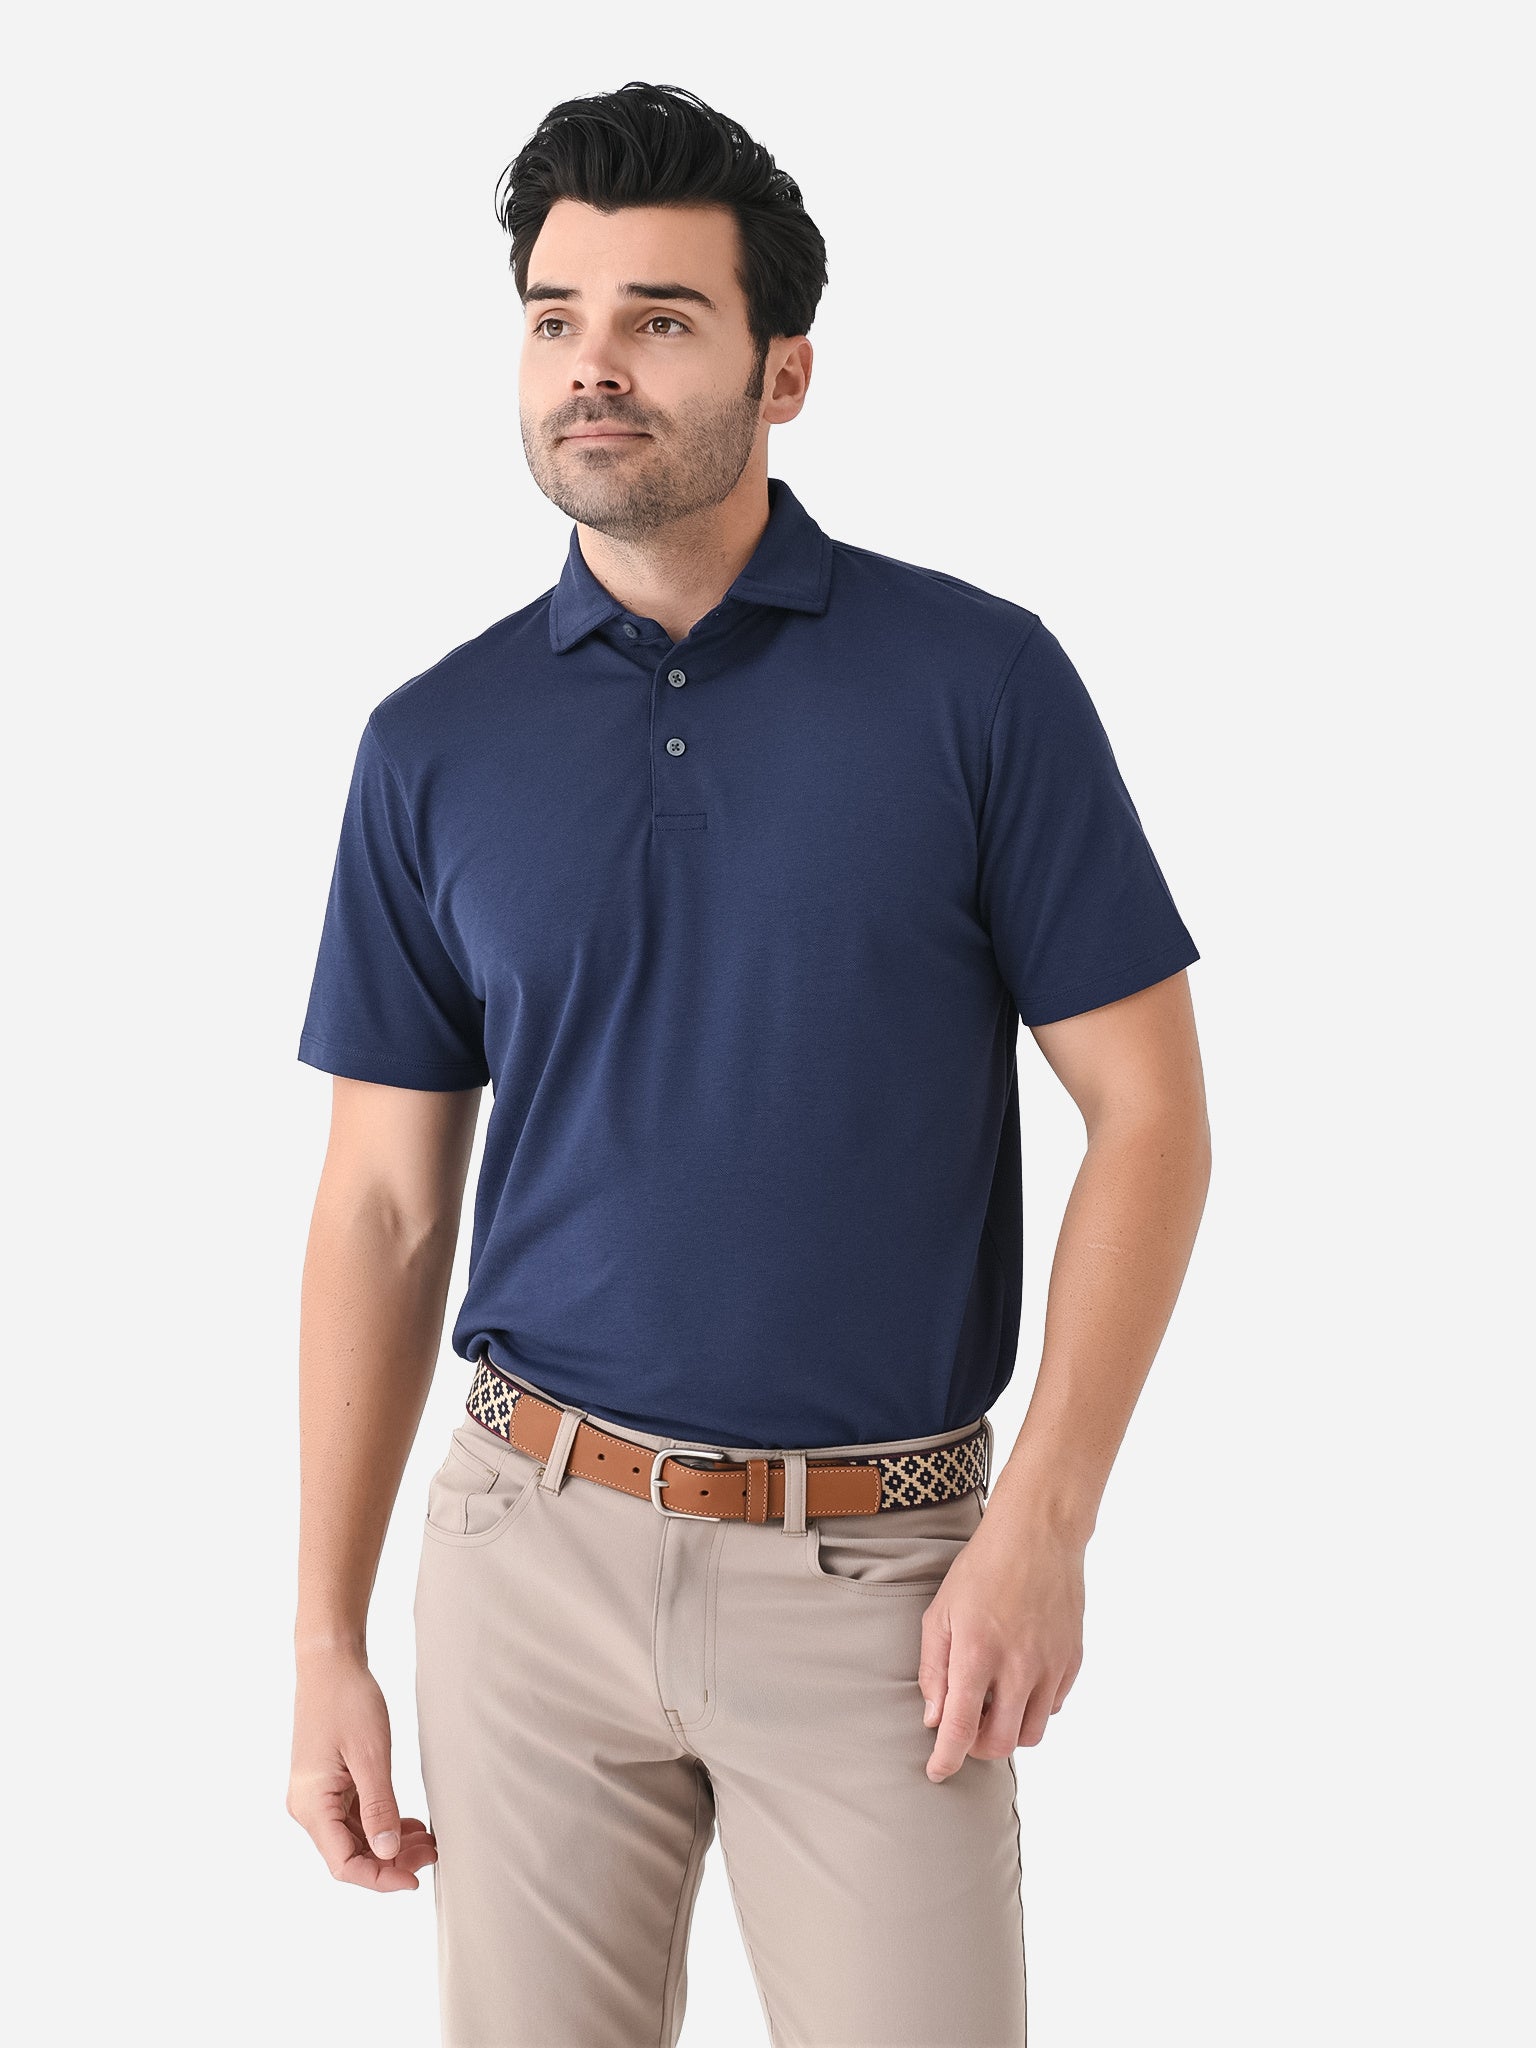 Greyson Men's Monogram Polo Shirt